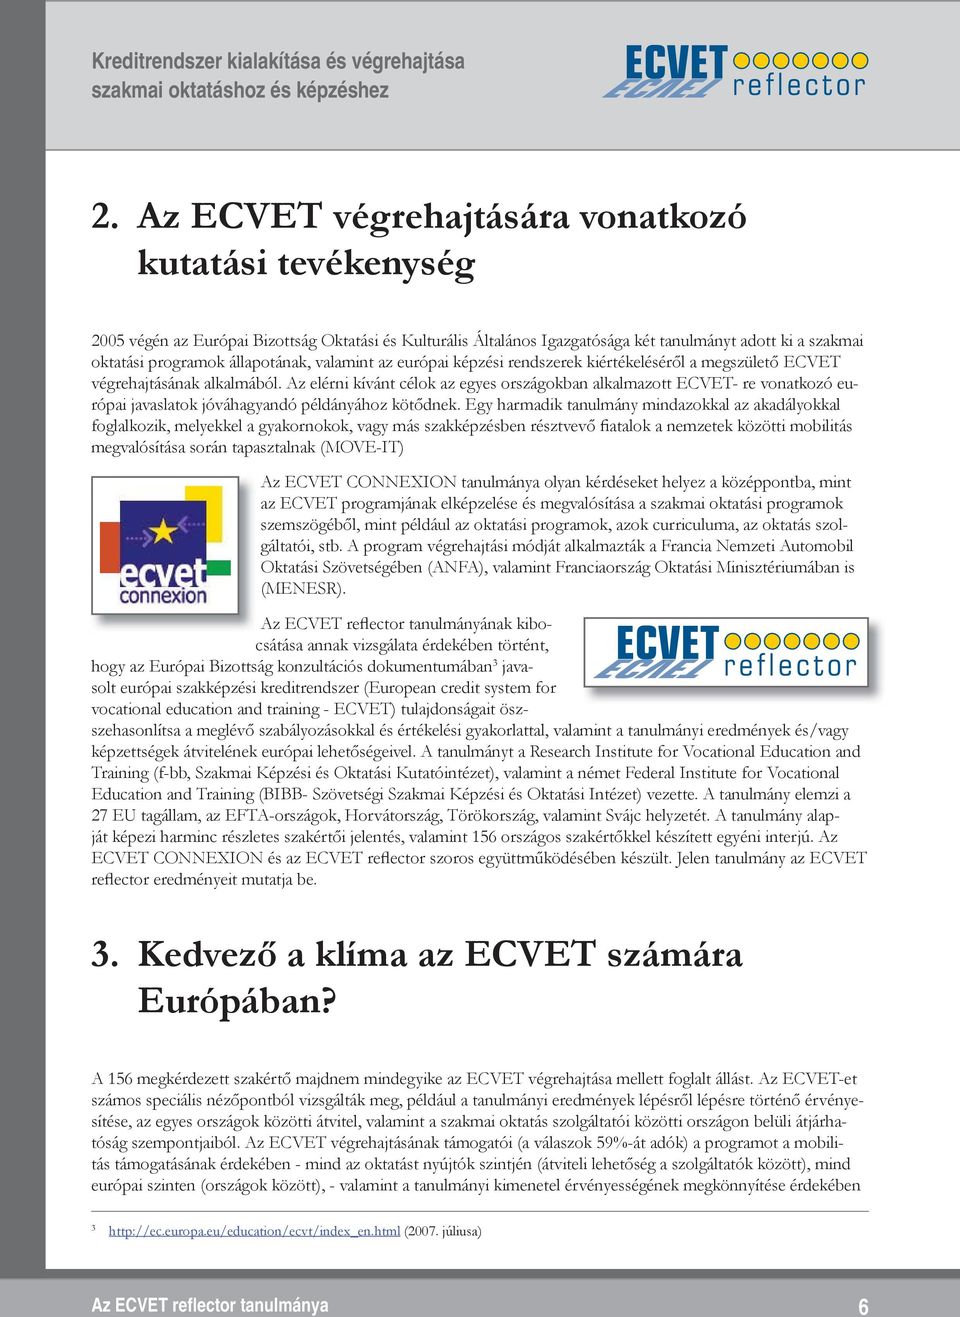 Az elérni kívánt célok az egyes országokban alkalmazott ECVET- re vonatkozó európai javaslatok jóváhagyandó példányához kötődnek.